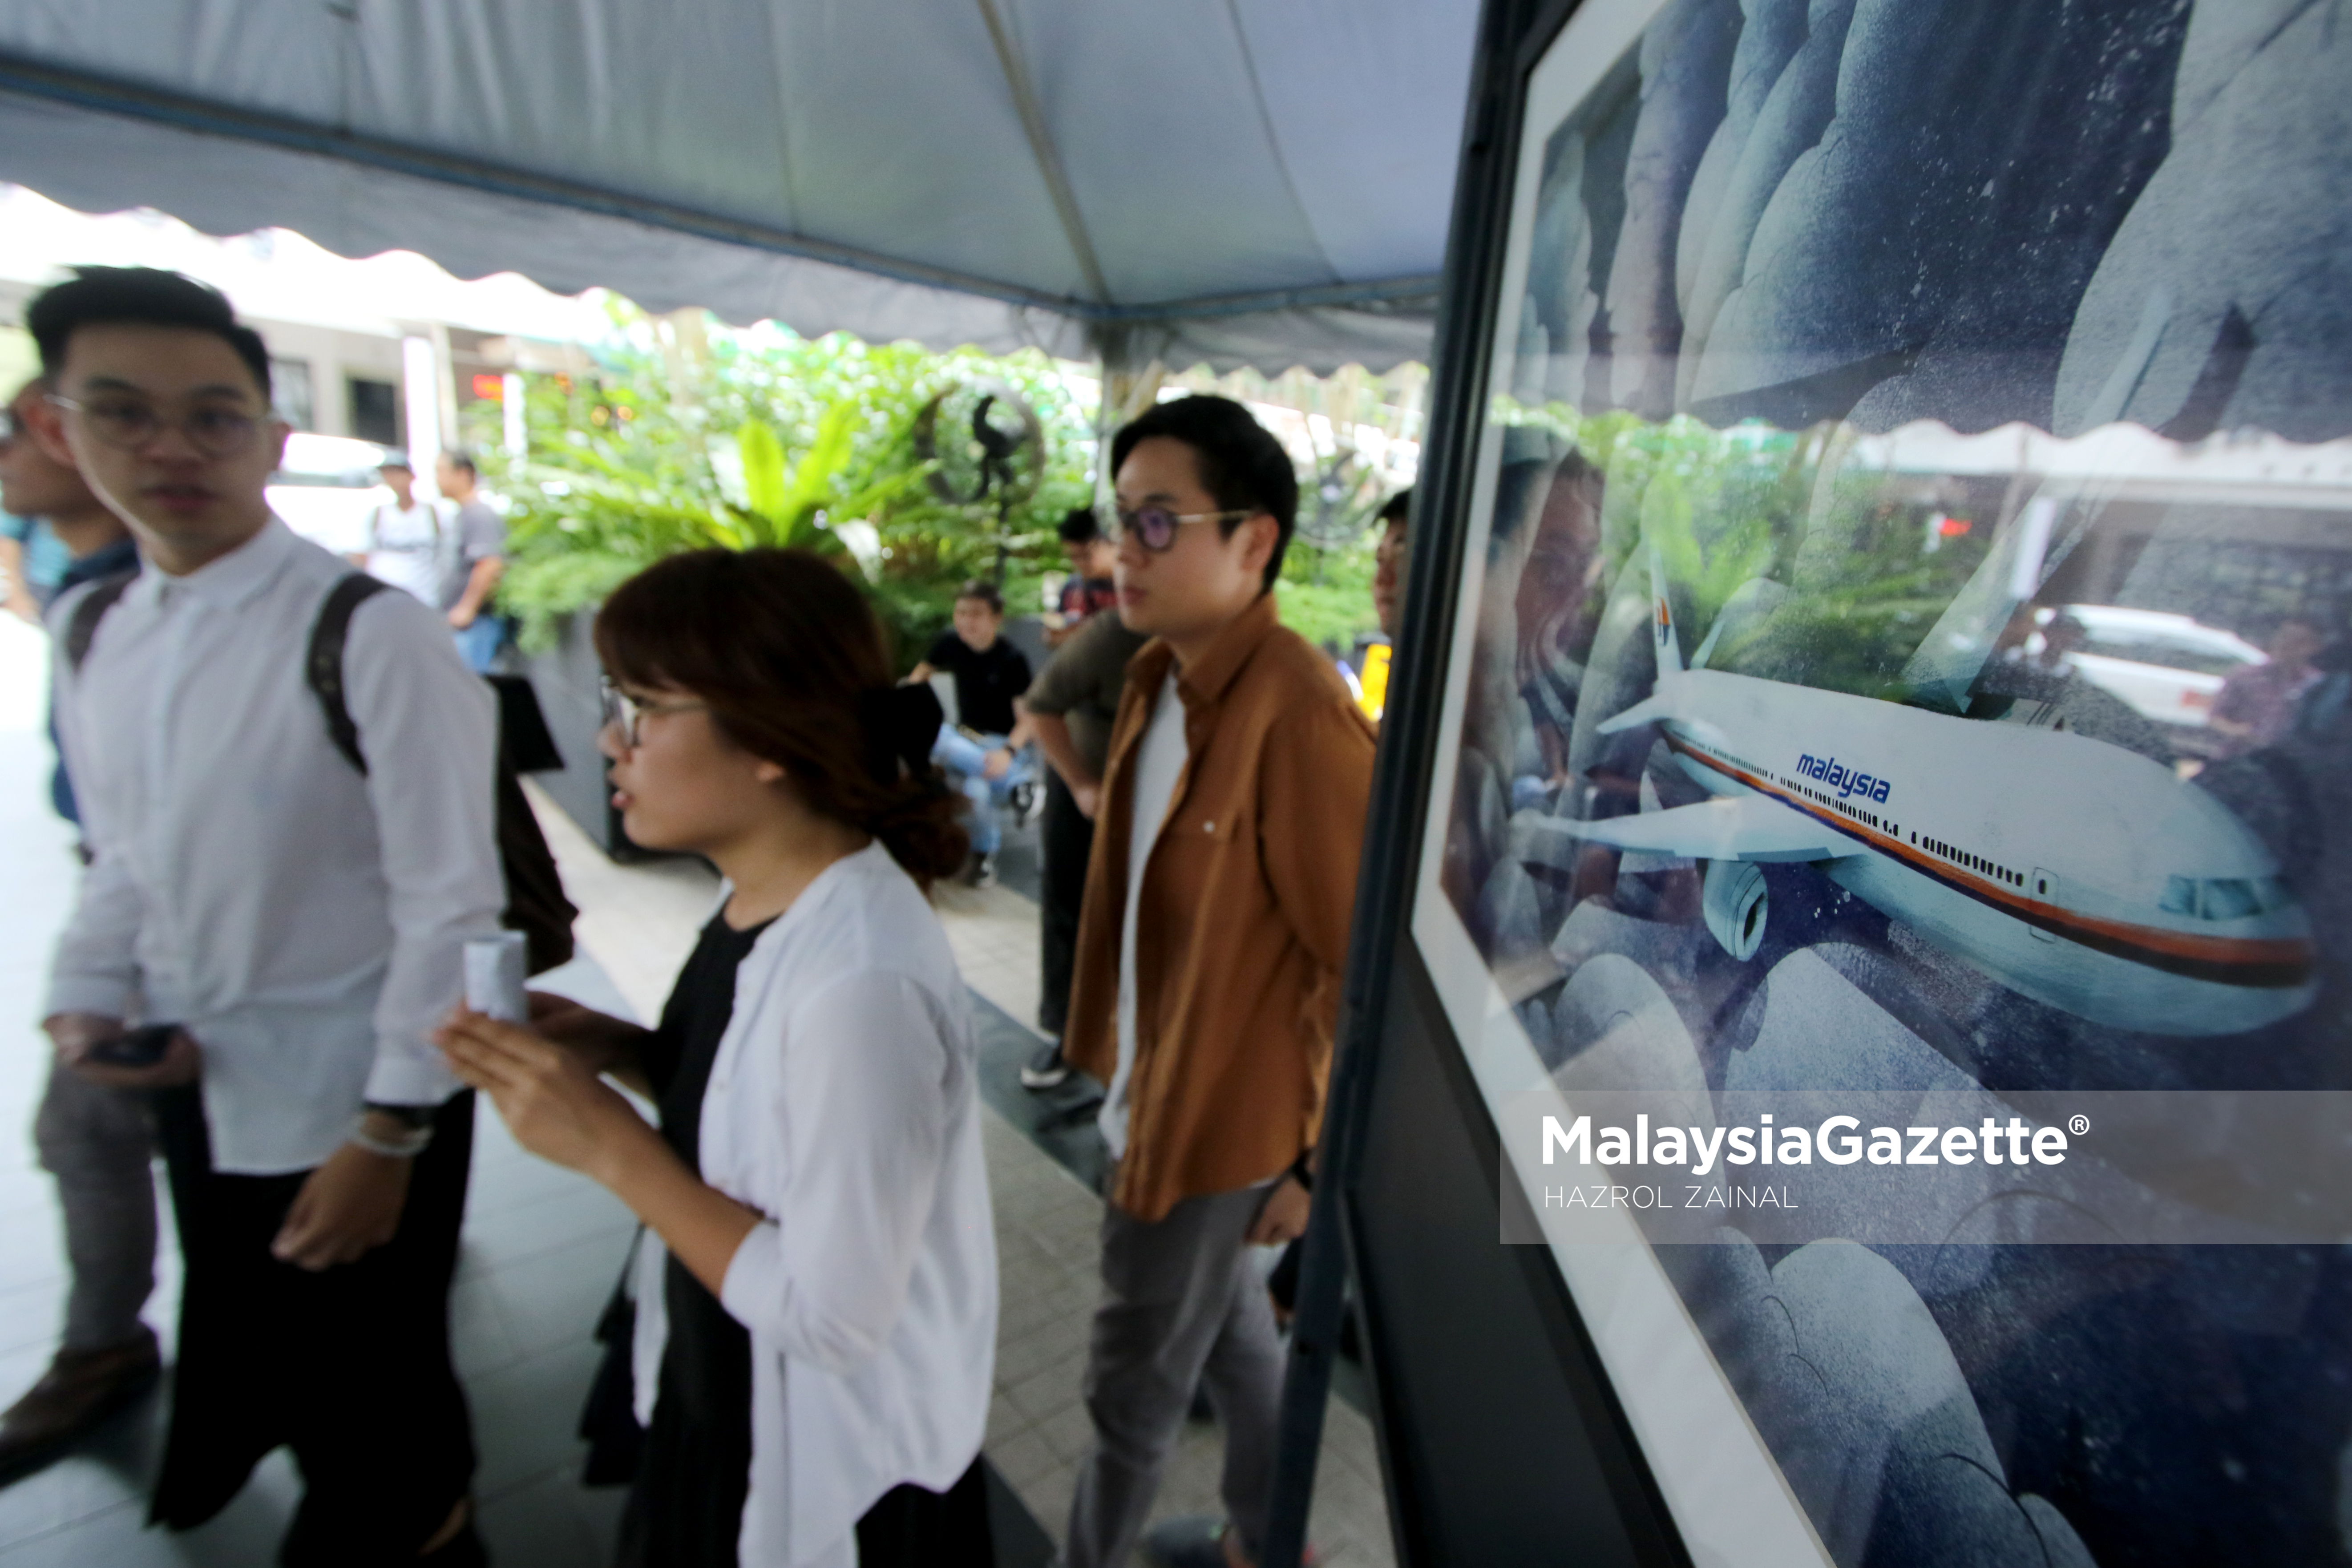 Antara lukisan pesawat MH370 yang terdapat sempena Pameran Memperingati Tahun ke 3 kehilangan pesawat MH370 di Publika, Solaris Dutamas, Kuala Lumpur. foto MOHD HAZROL ZAINAL, 04 MAC 2017.